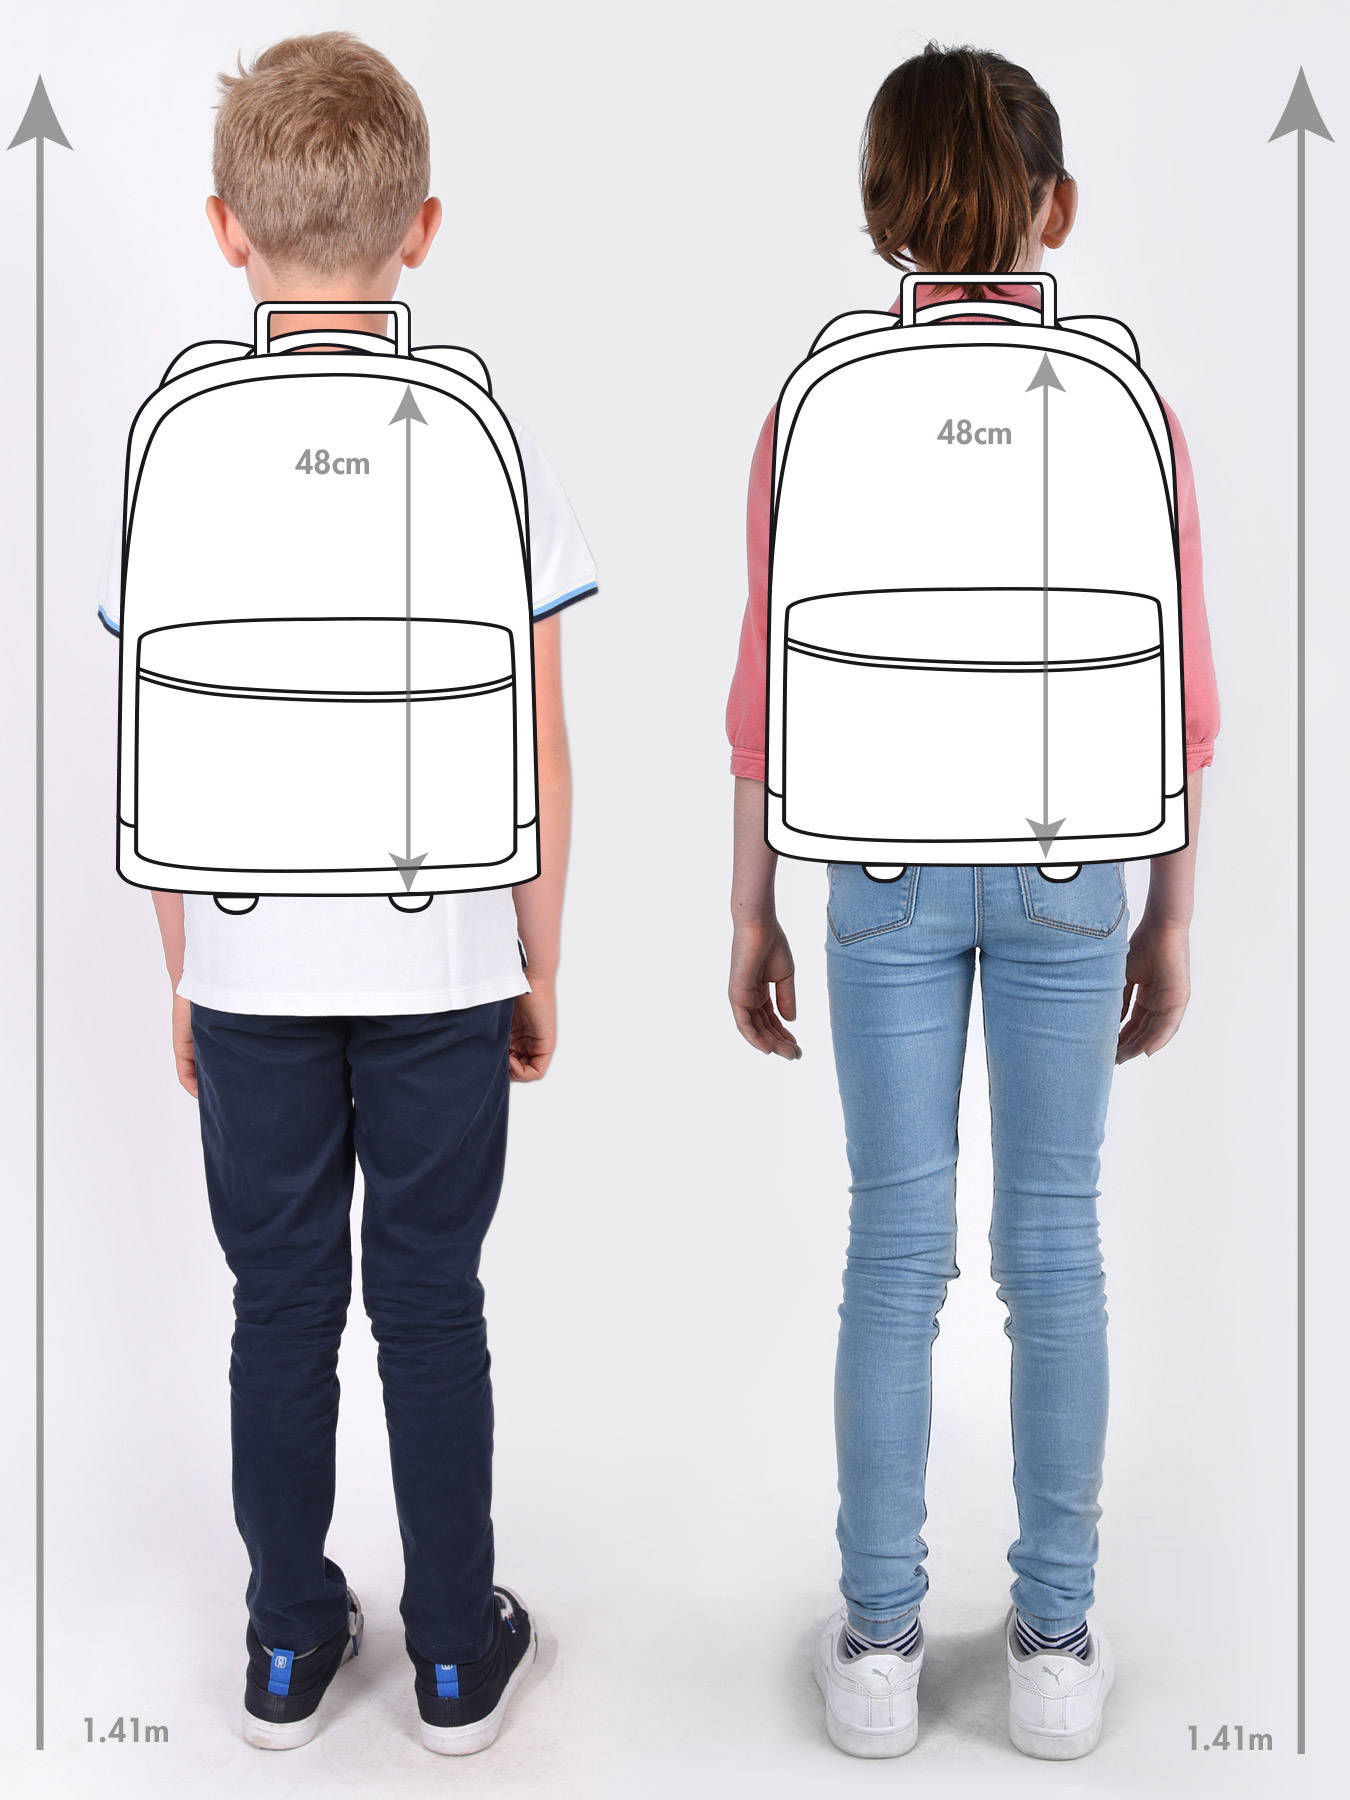 Kipling Wheeled backpack SARI - best prices